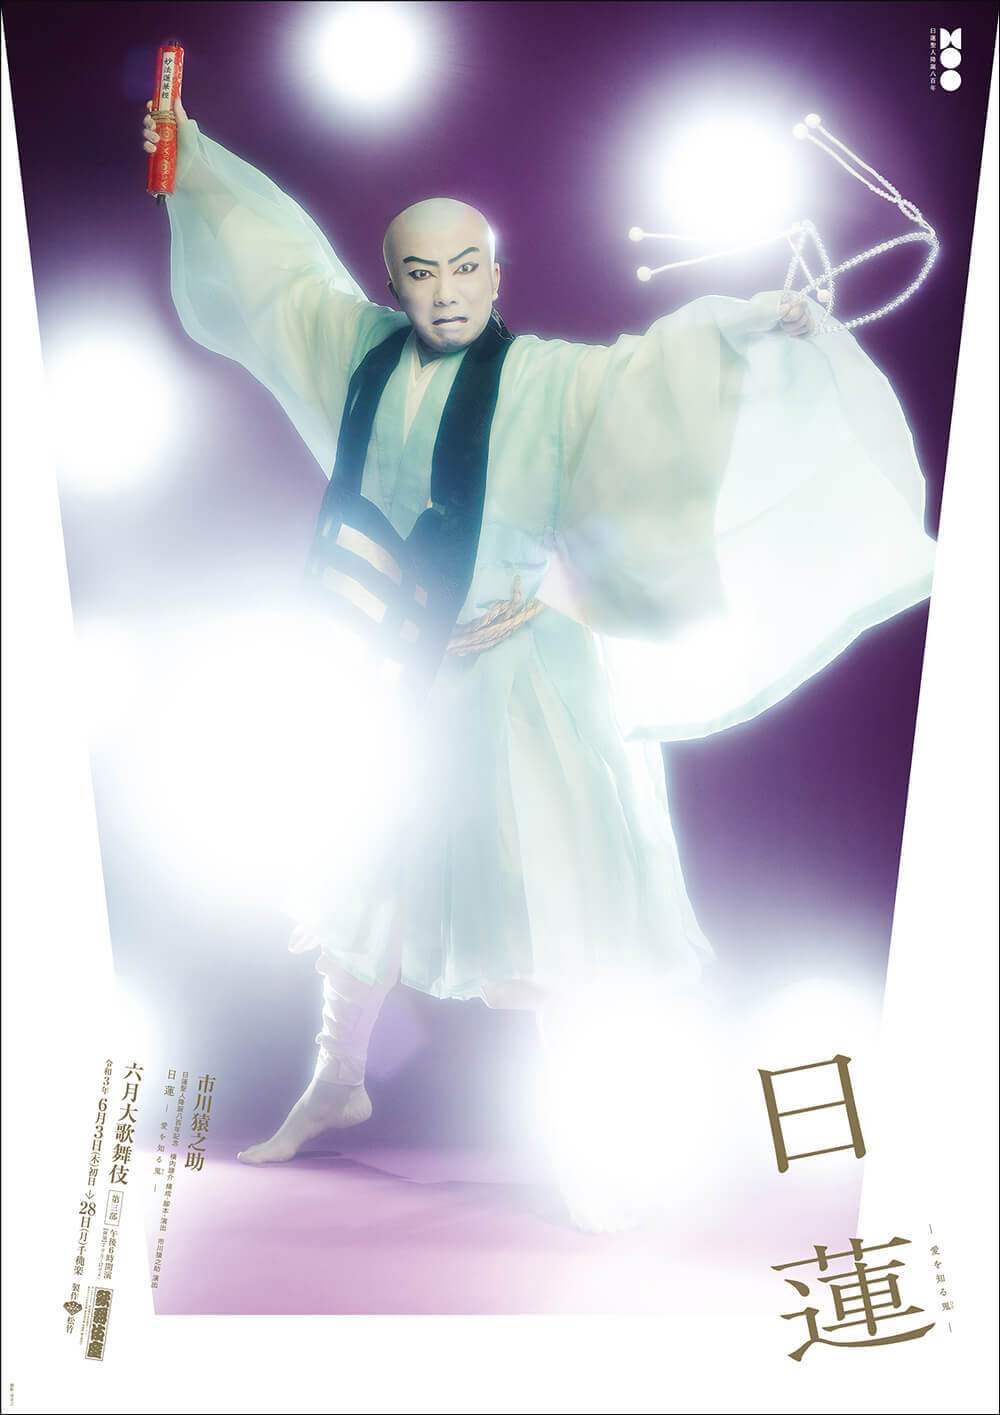 歌舞伎座『日蓮』特別ポスター公開